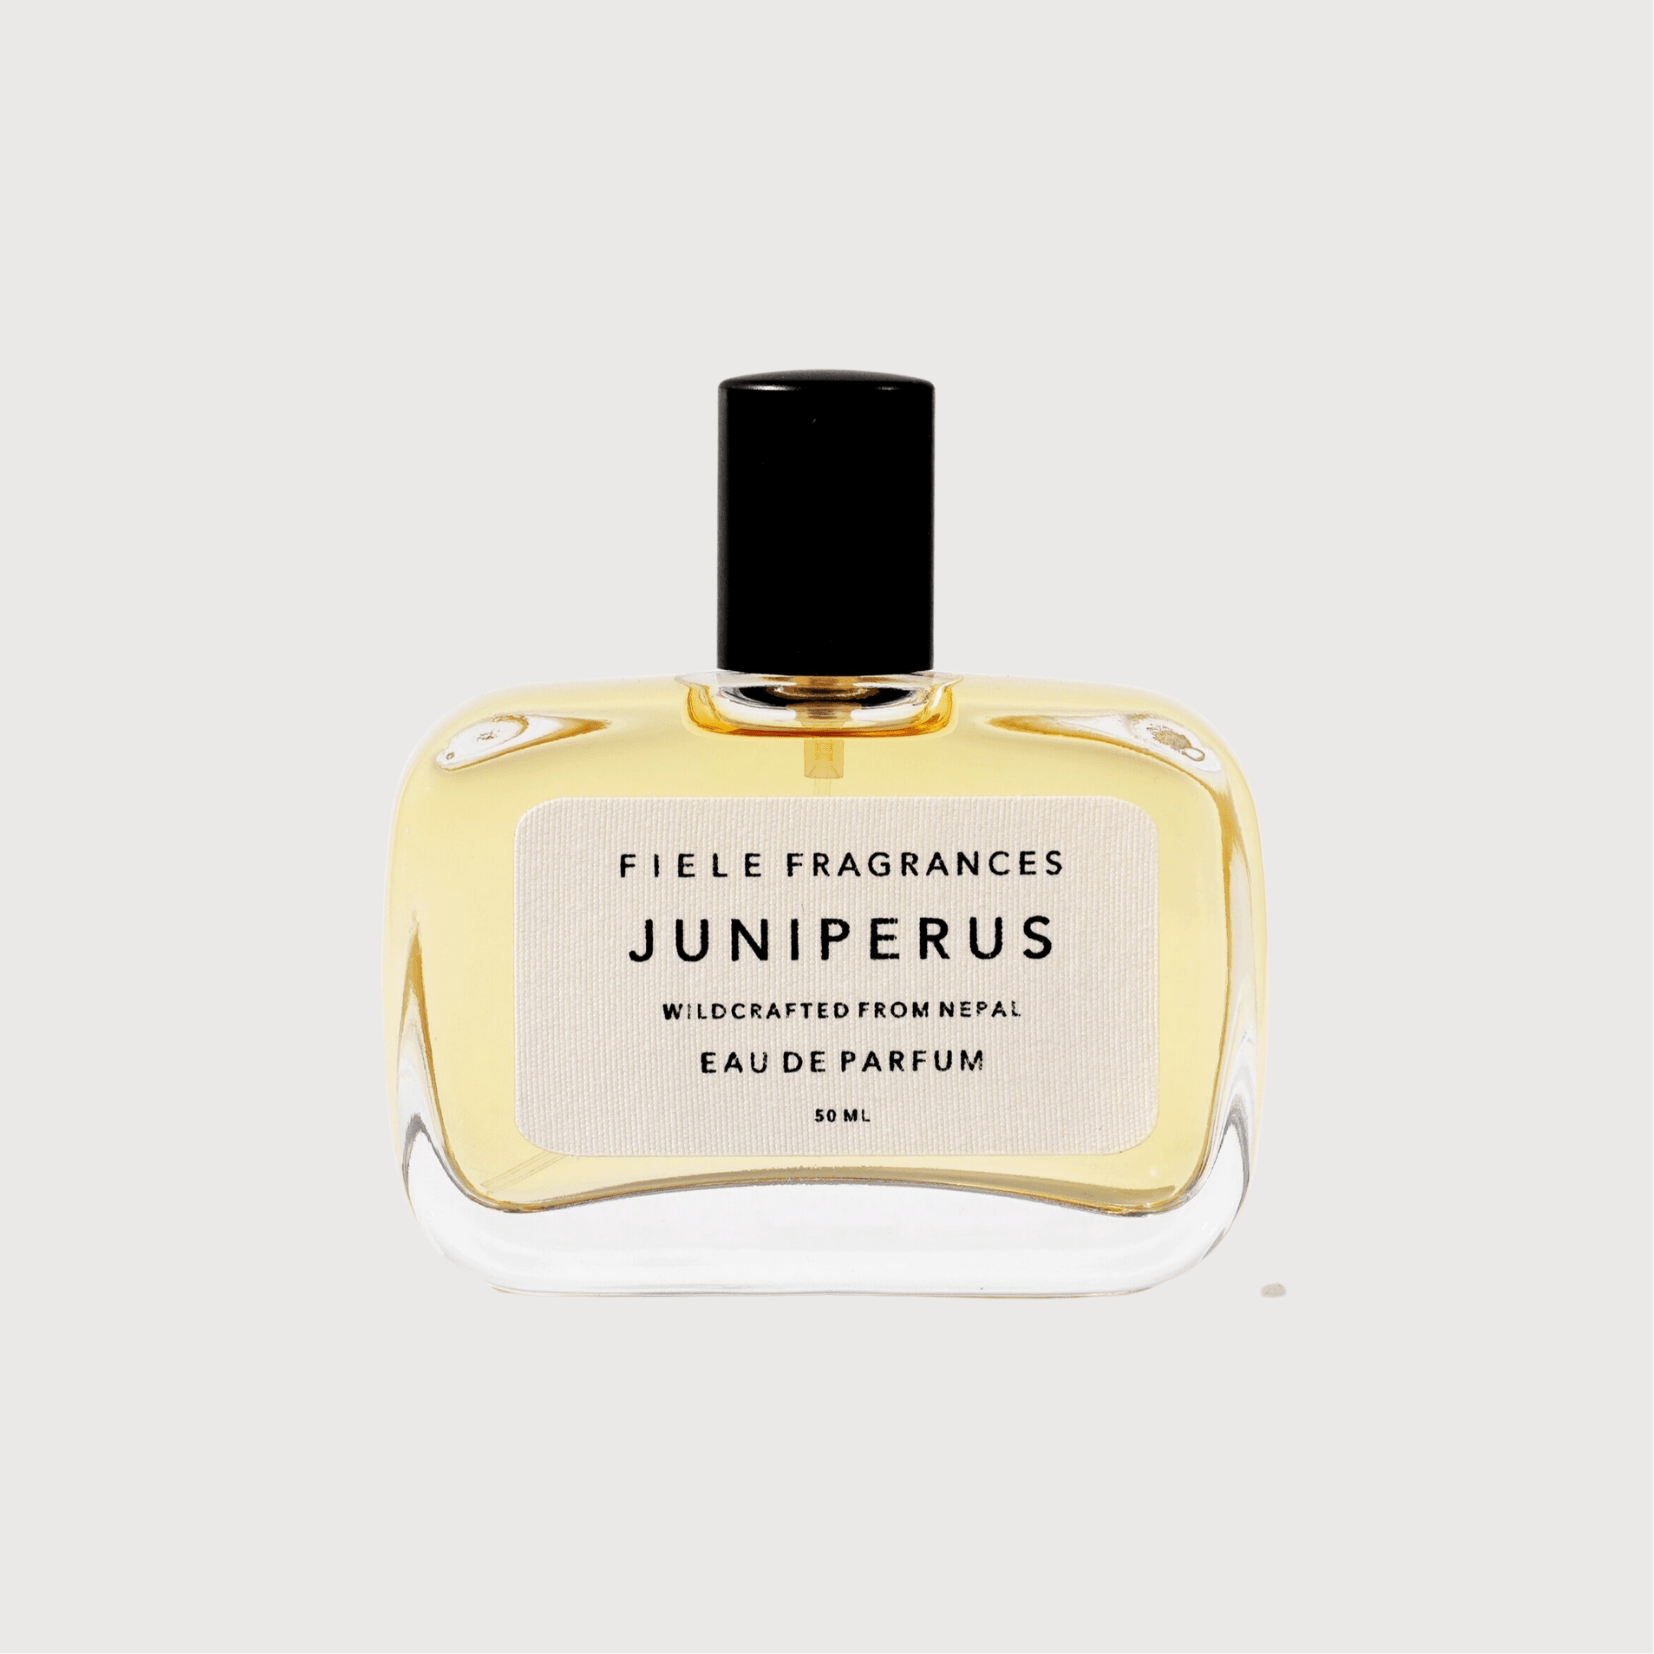 Juniperus eau de parfum by Fiele Fragrance - Haven